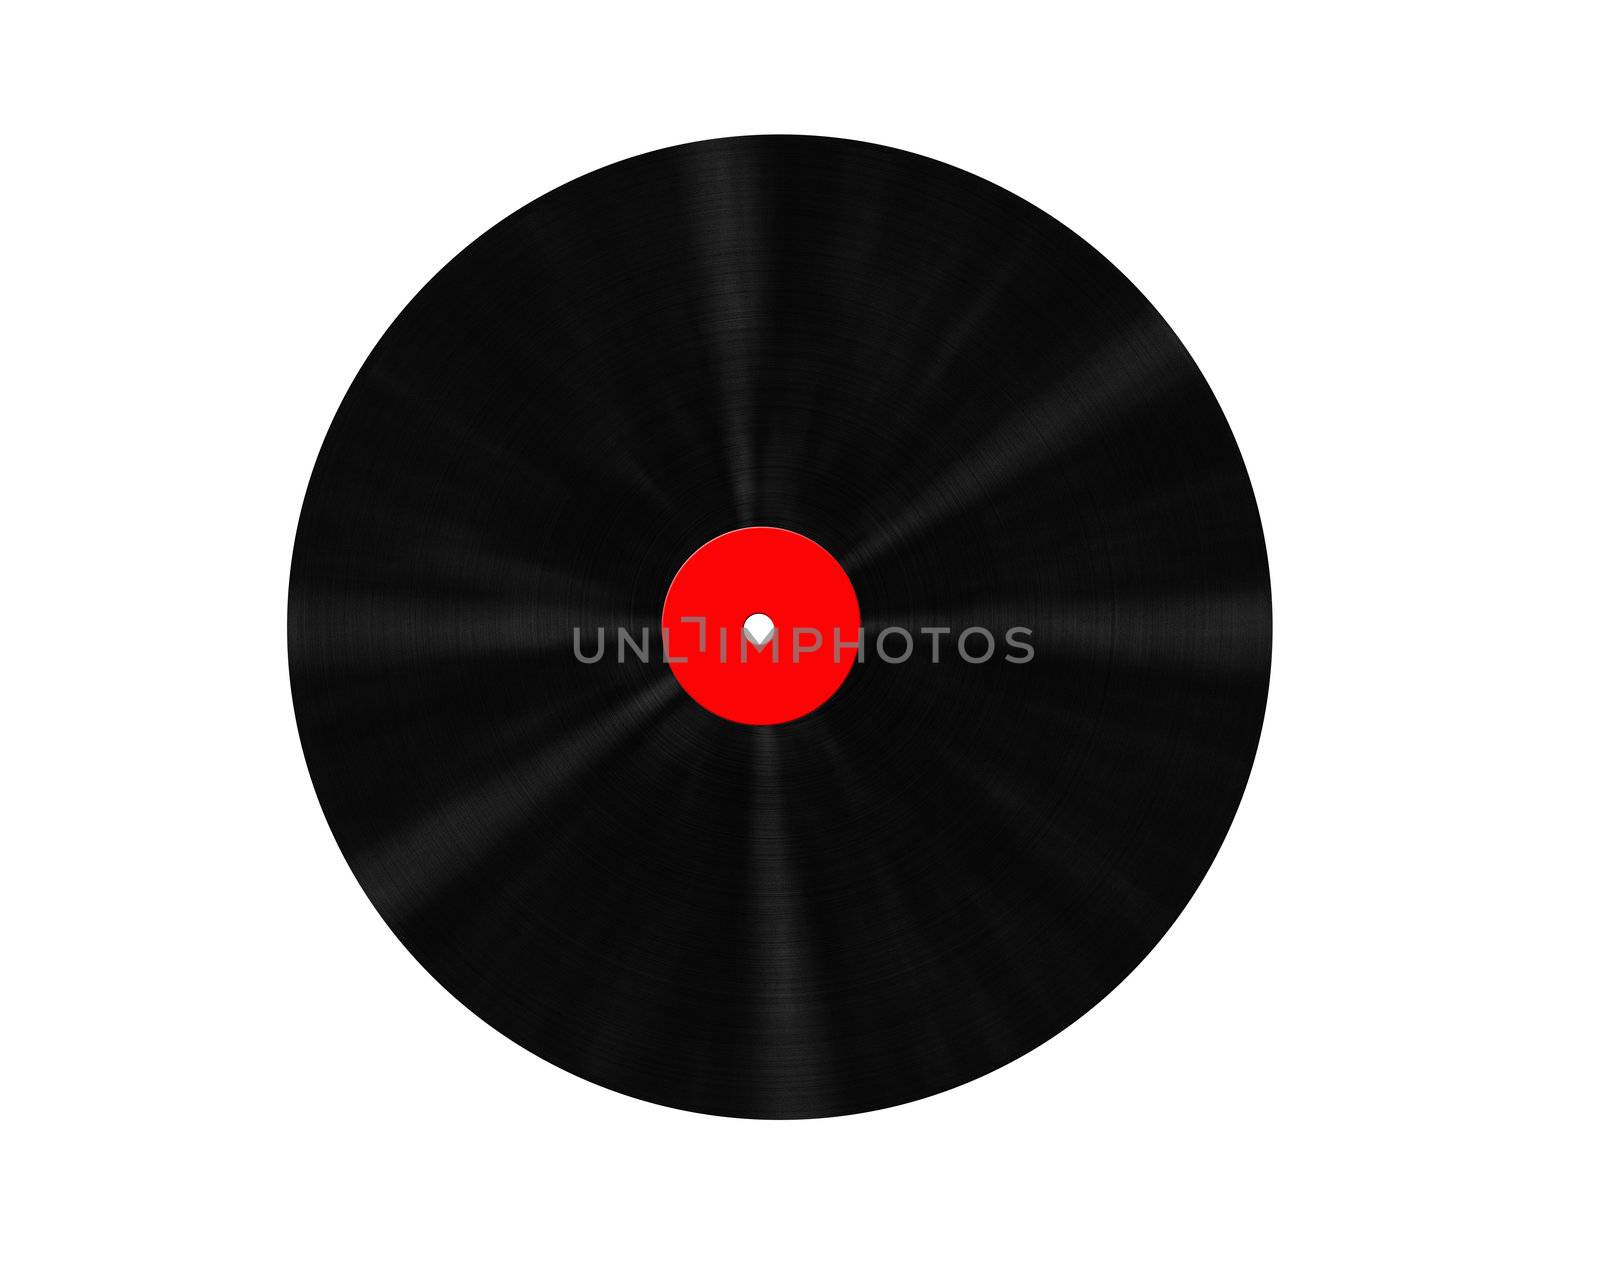 Vinyl Record on 3D Digital High Resolution